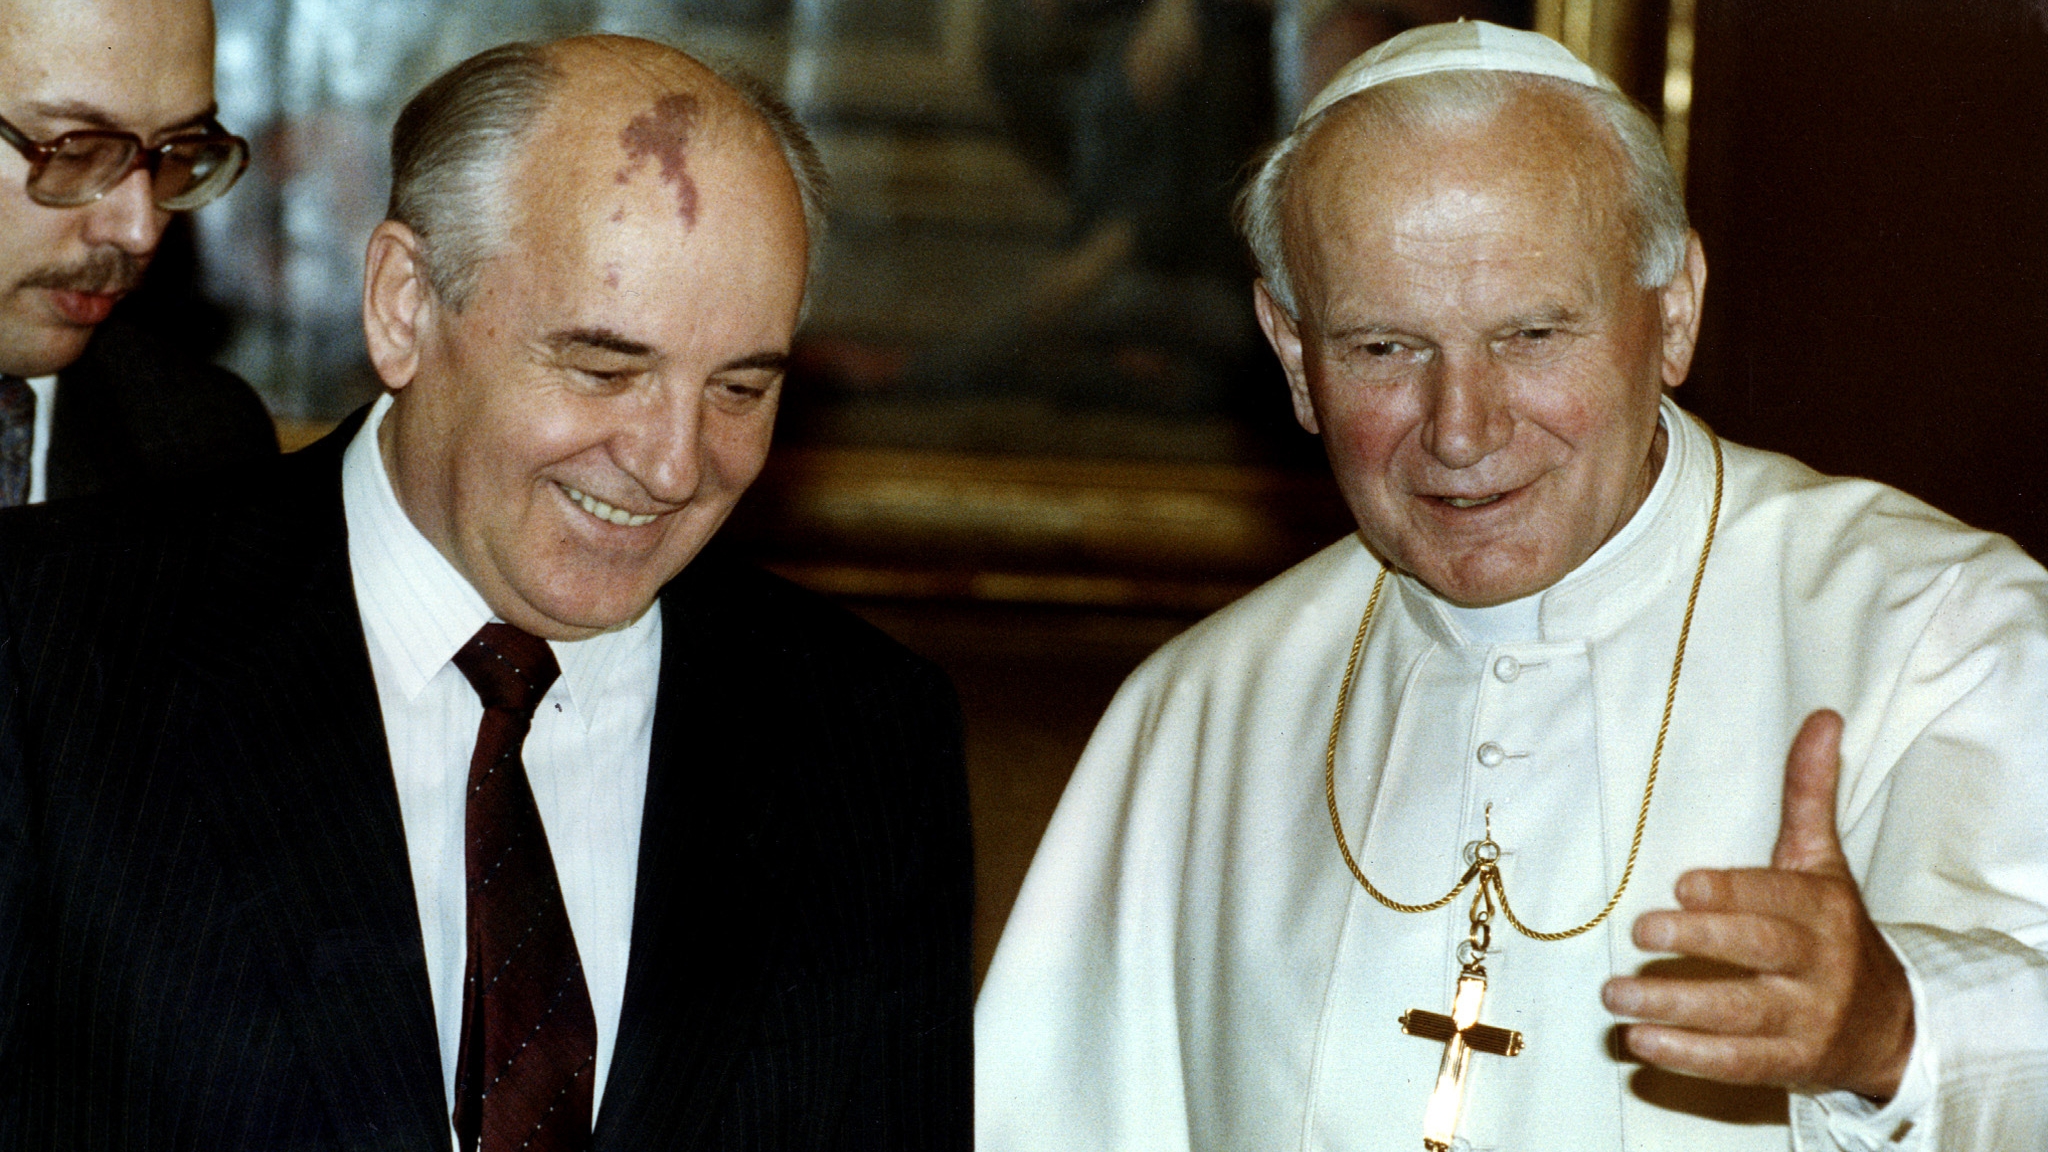 El papa Juan Pablo II recibe a Mikhail Gorbachov, ex jefe de estado de la Unión Soviética en El Vaticano. Noviembre de 1990. REUTERS/Luciano
Mellace 